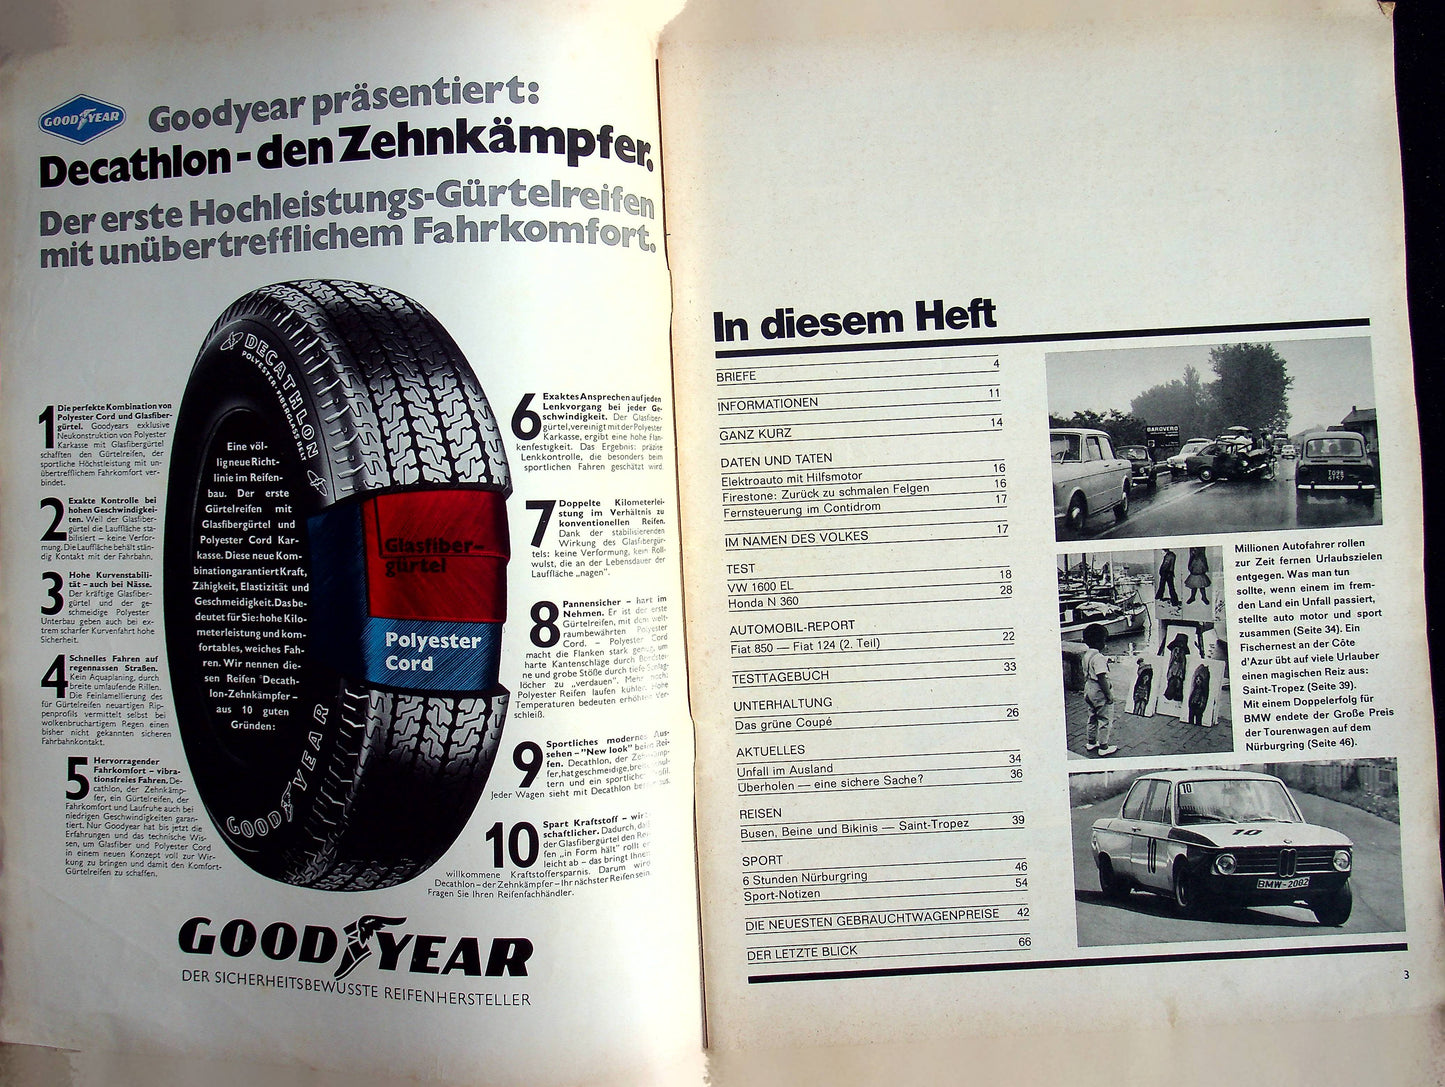 Auto Motor und Sport 15/1968